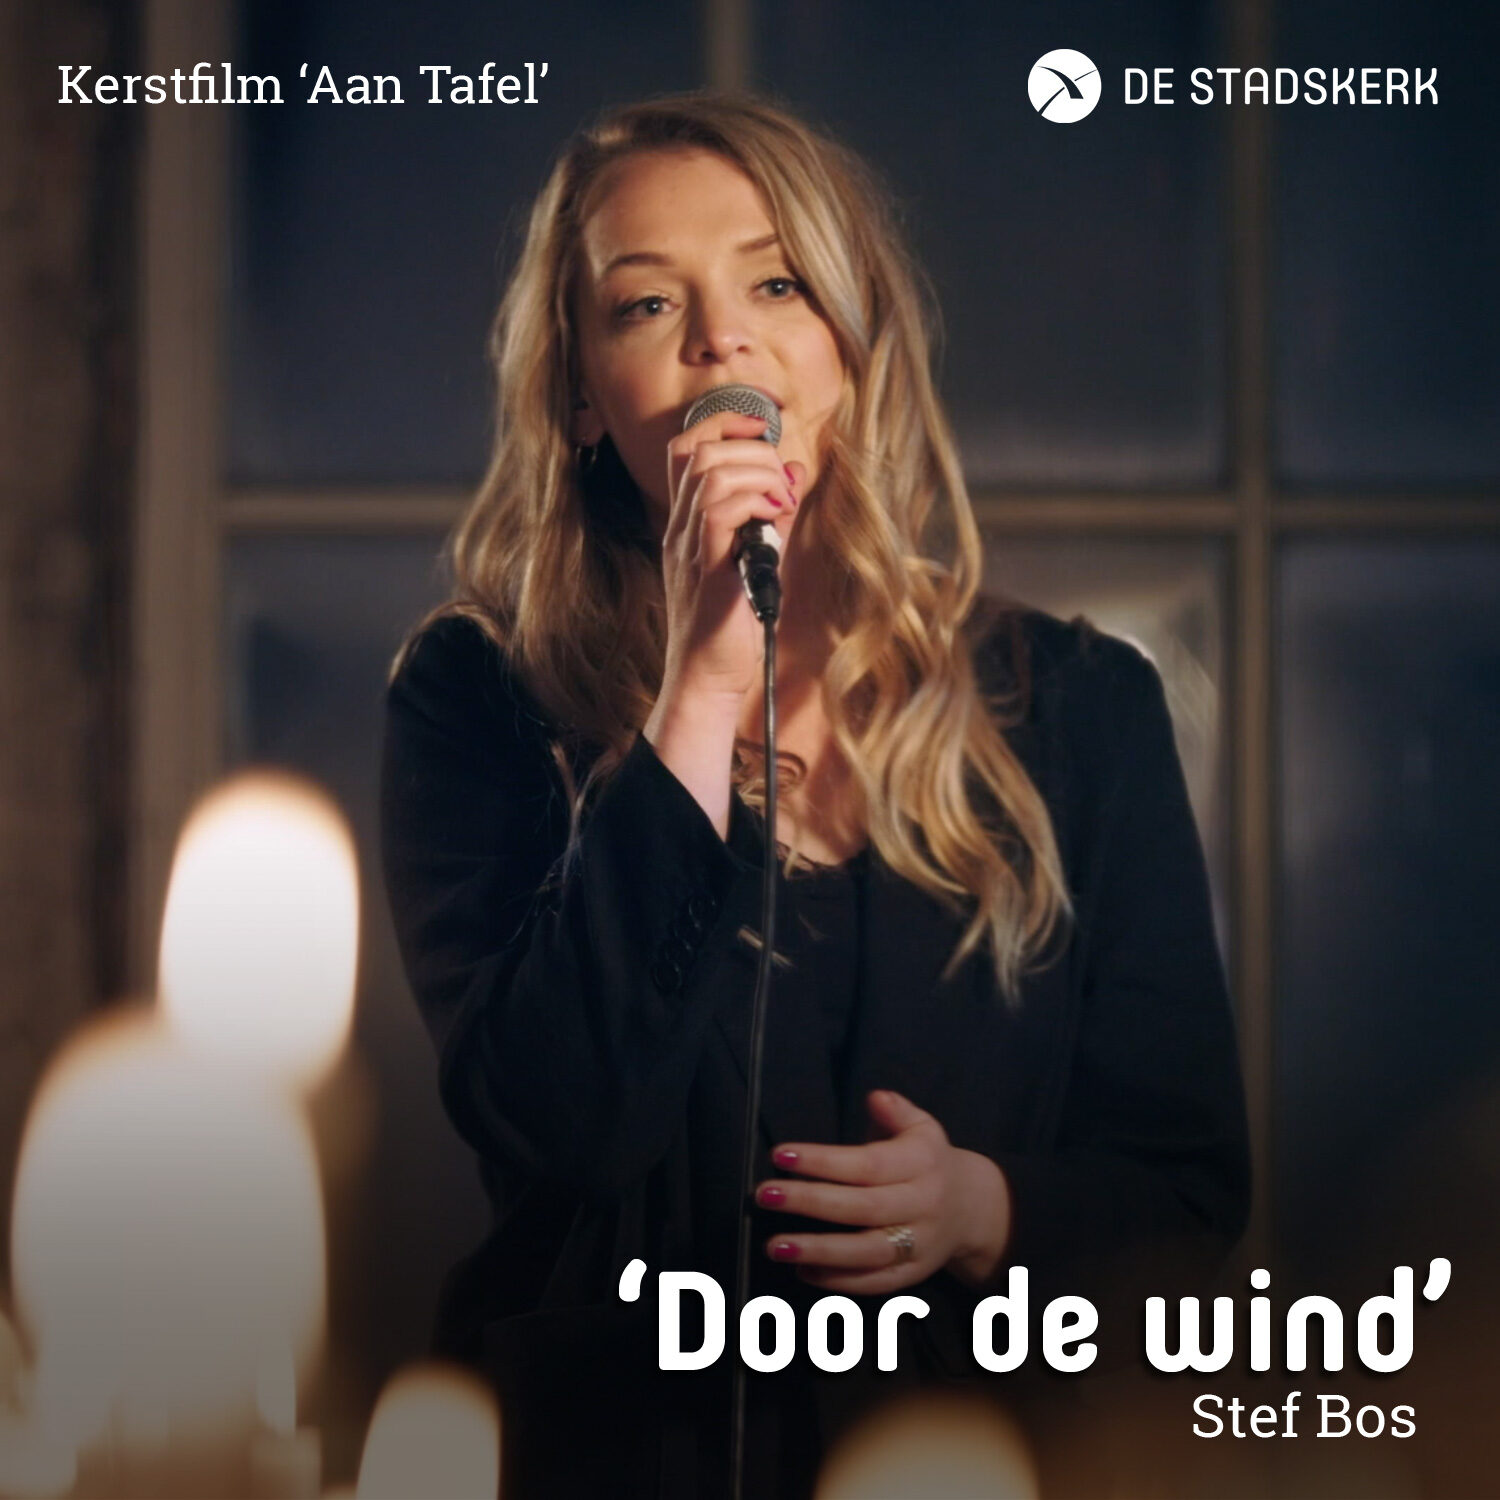 Door de wind – Stef Bos (Cover de Stadskerk)